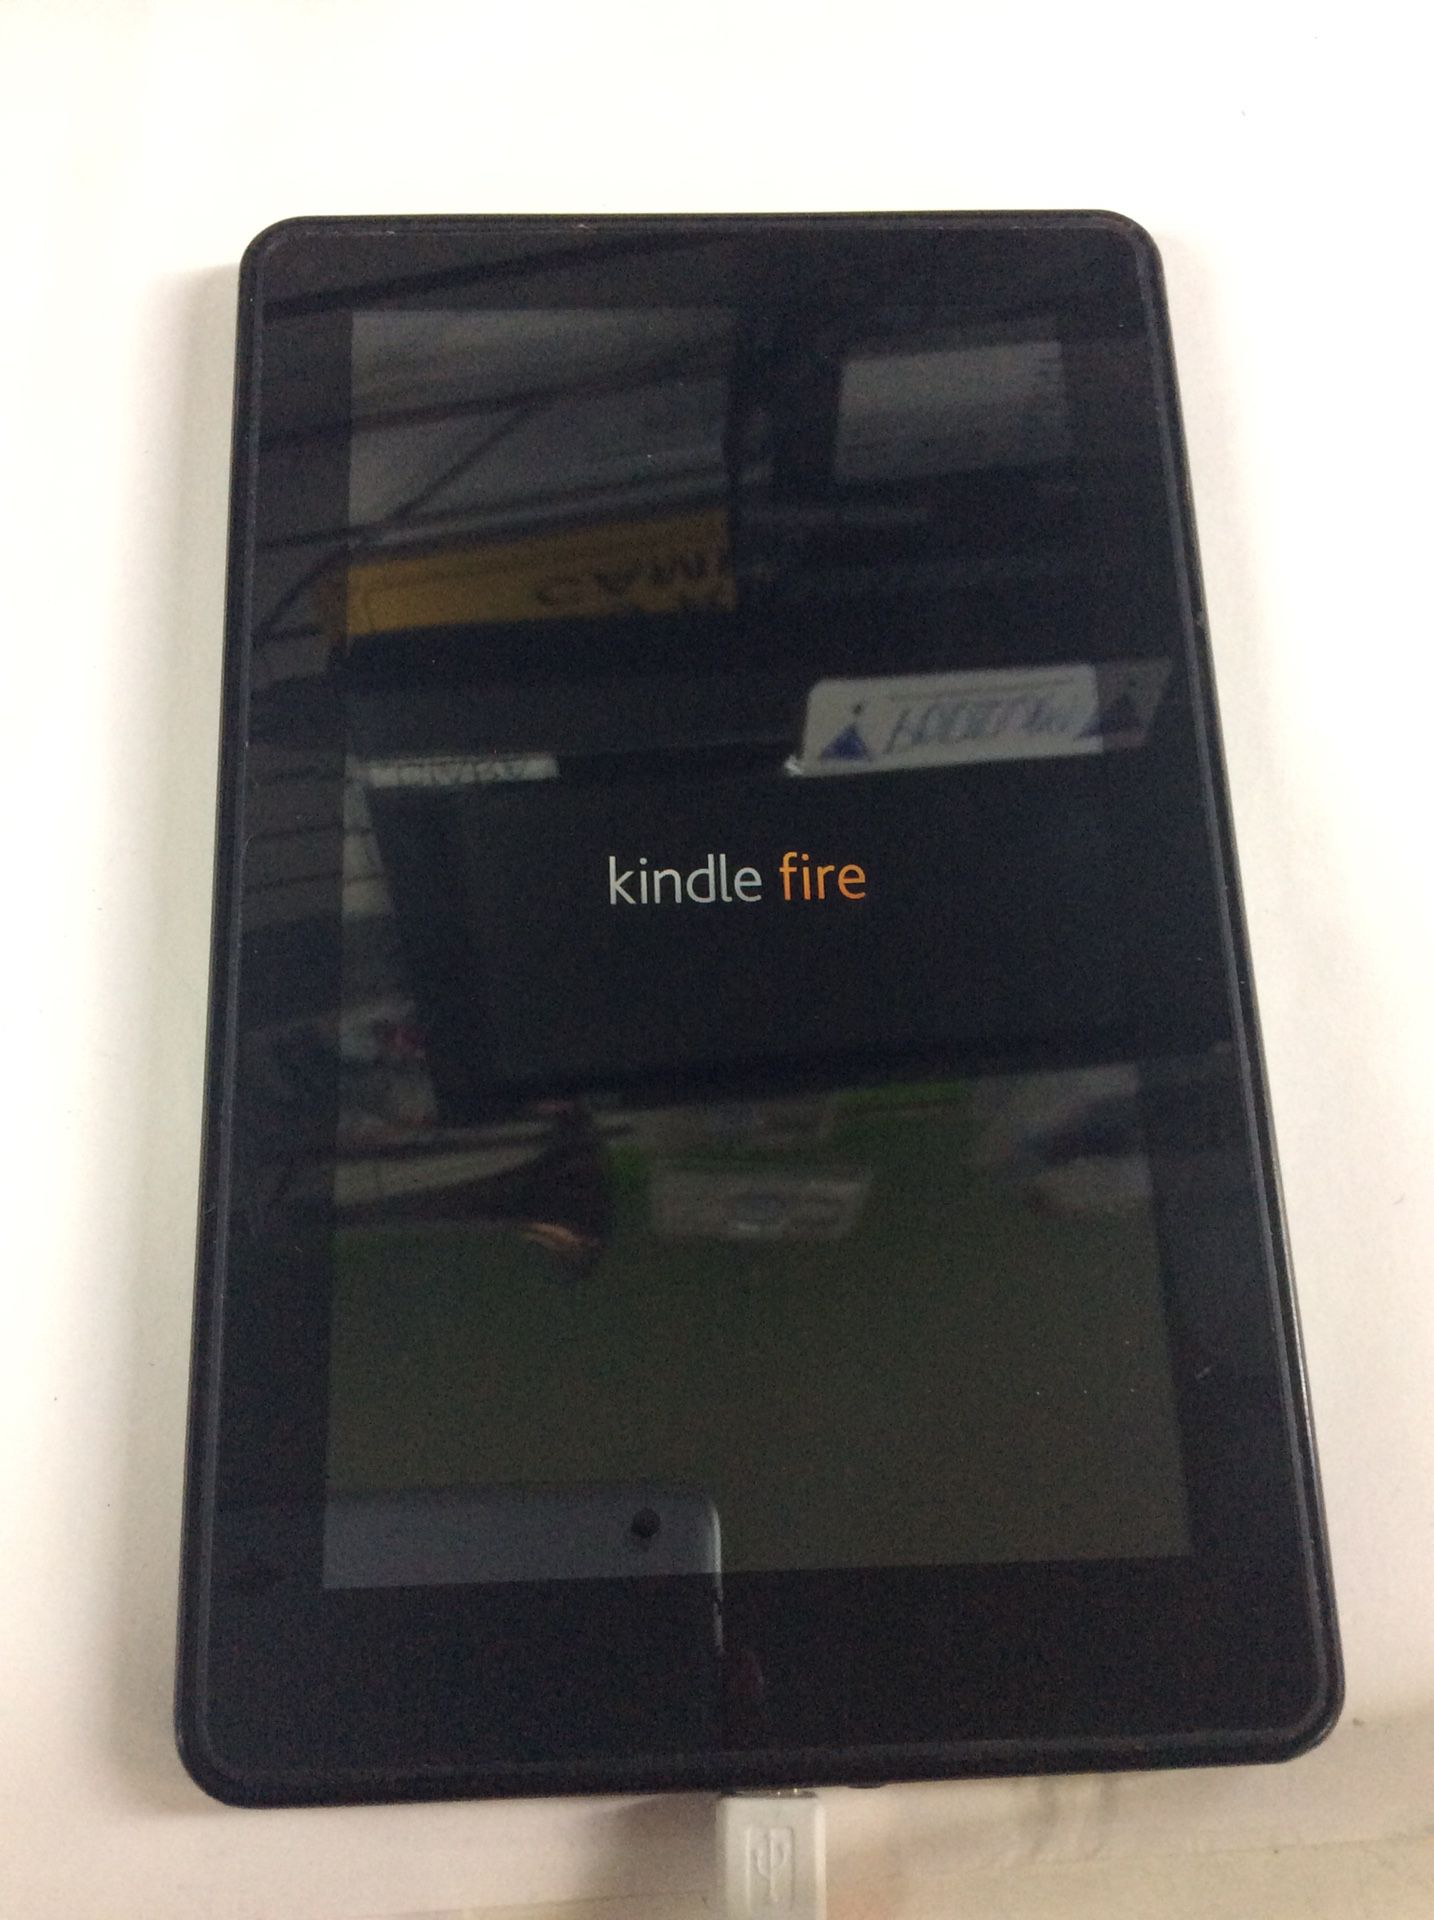 Amazon Kindle Fire